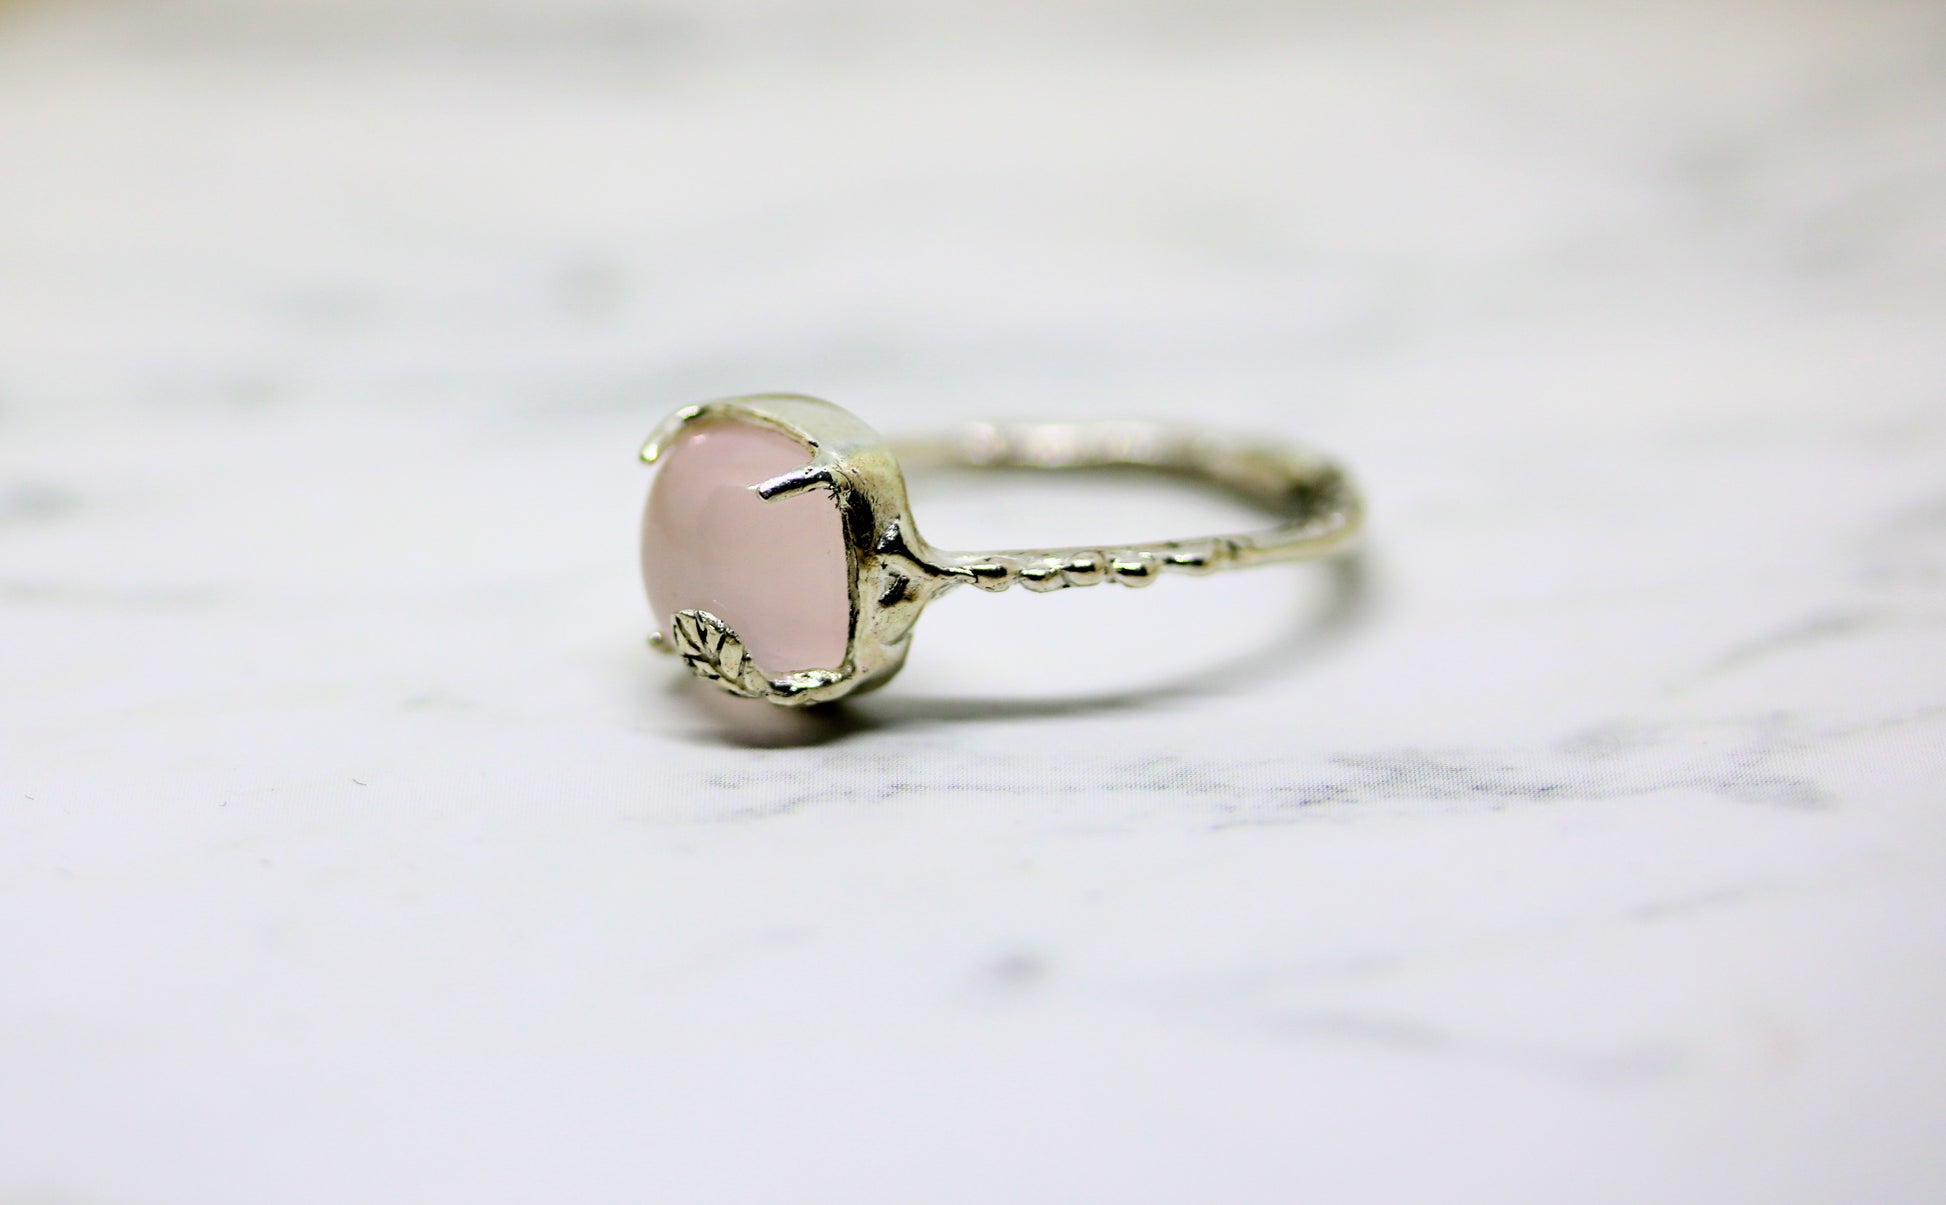 lovely rose quartz ring